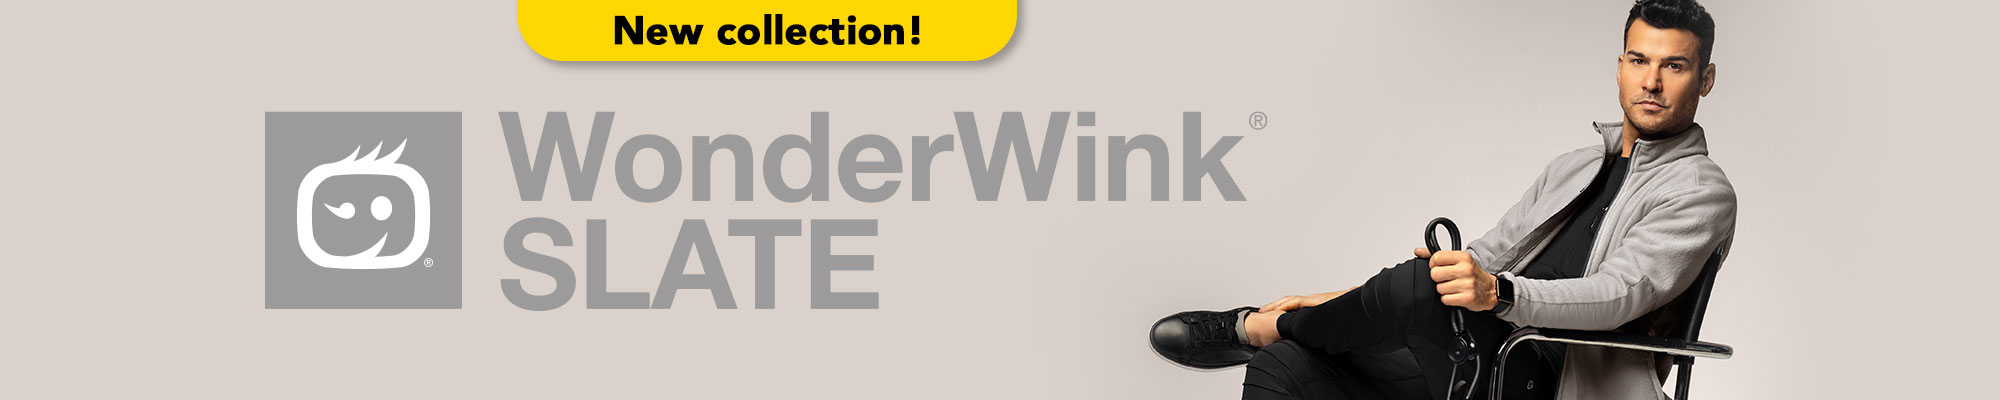 WonderWink Slate